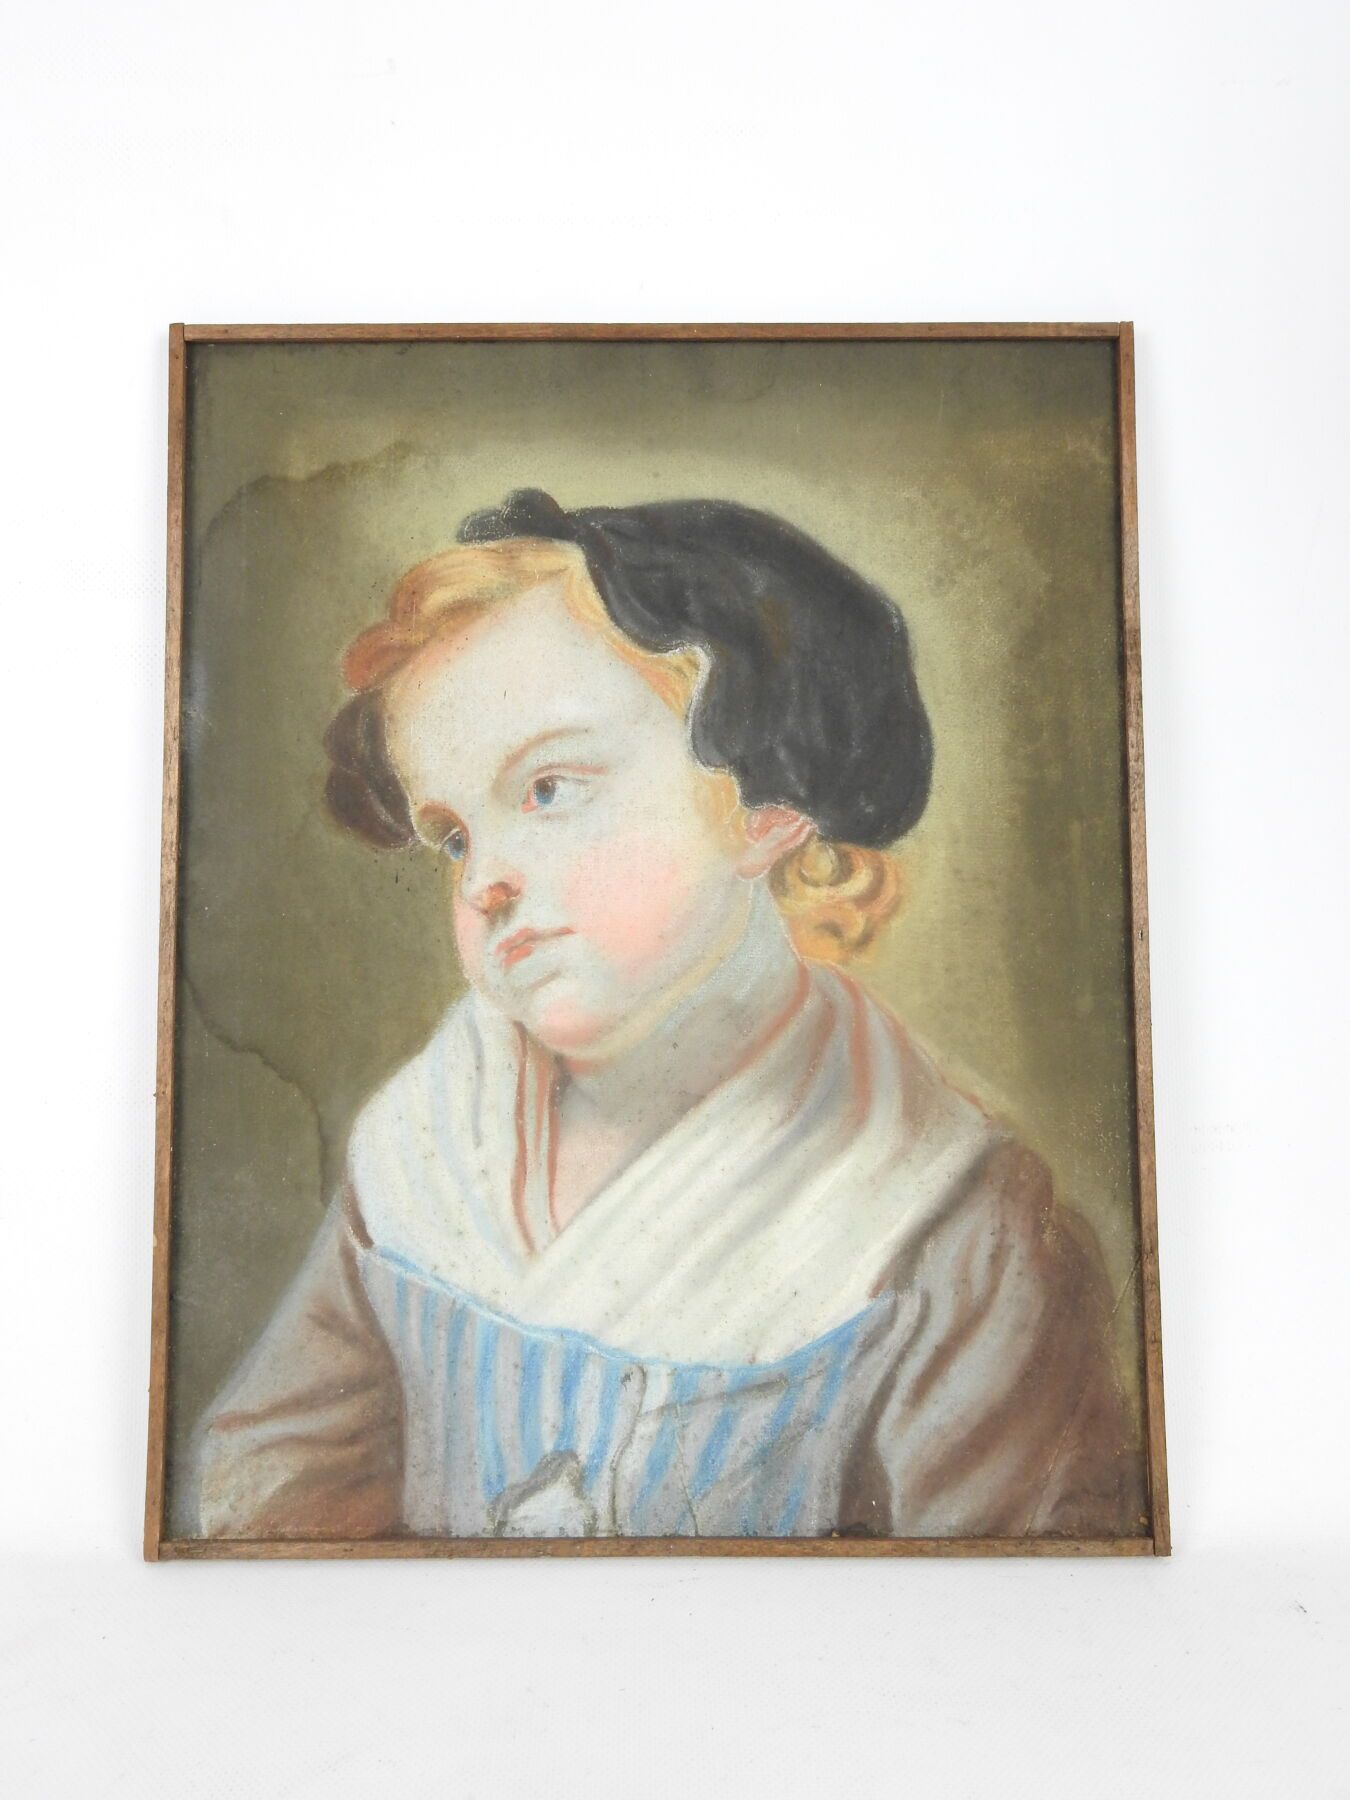 Null 18世纪末至19世纪初的法国学校。一个孩子的肖像。粉笔画。40x32cm。湿气污渍。